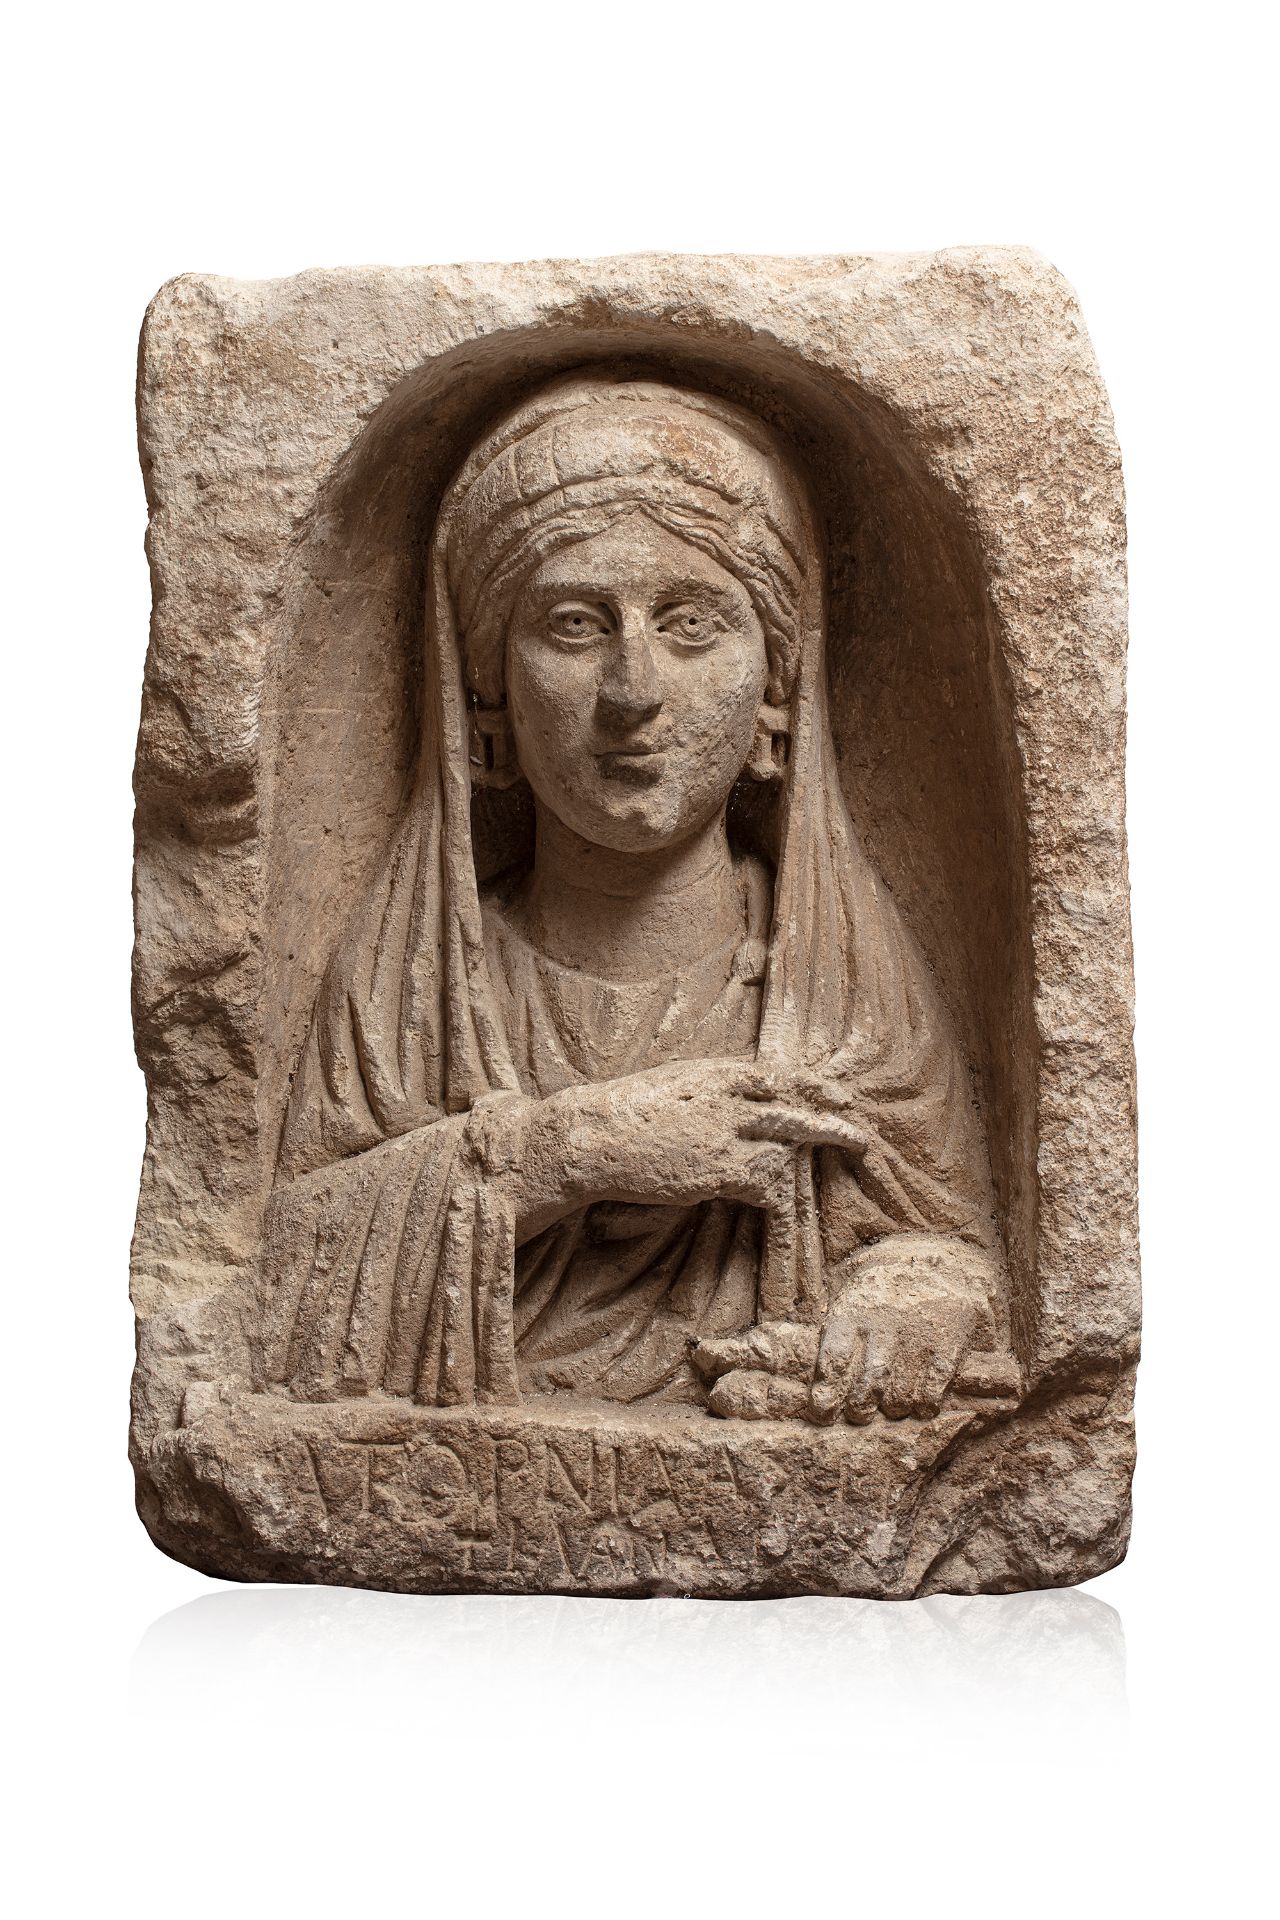 Stèle rectangulaire à niche cintrée laissant apparaitre un buste de Patricienne [...]